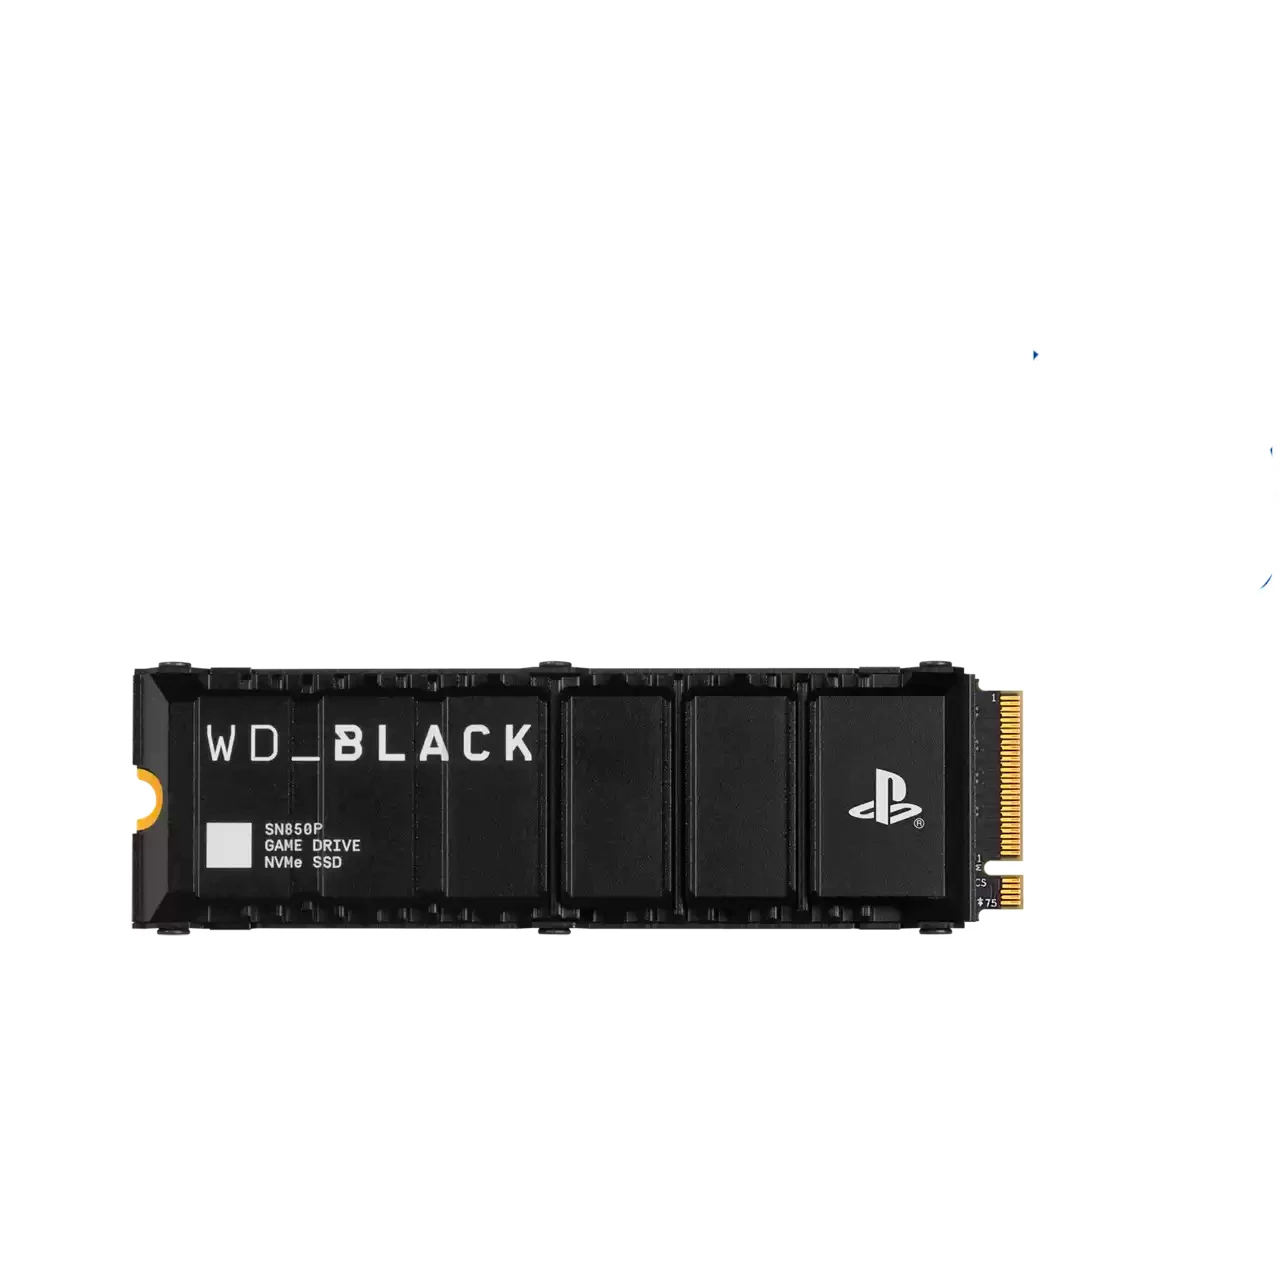 Додаткова пам'ять WD_BLACK 2TB SN850P NVMe SSD for PS5 consoles (WDBBYV0020BNC-WRSN)